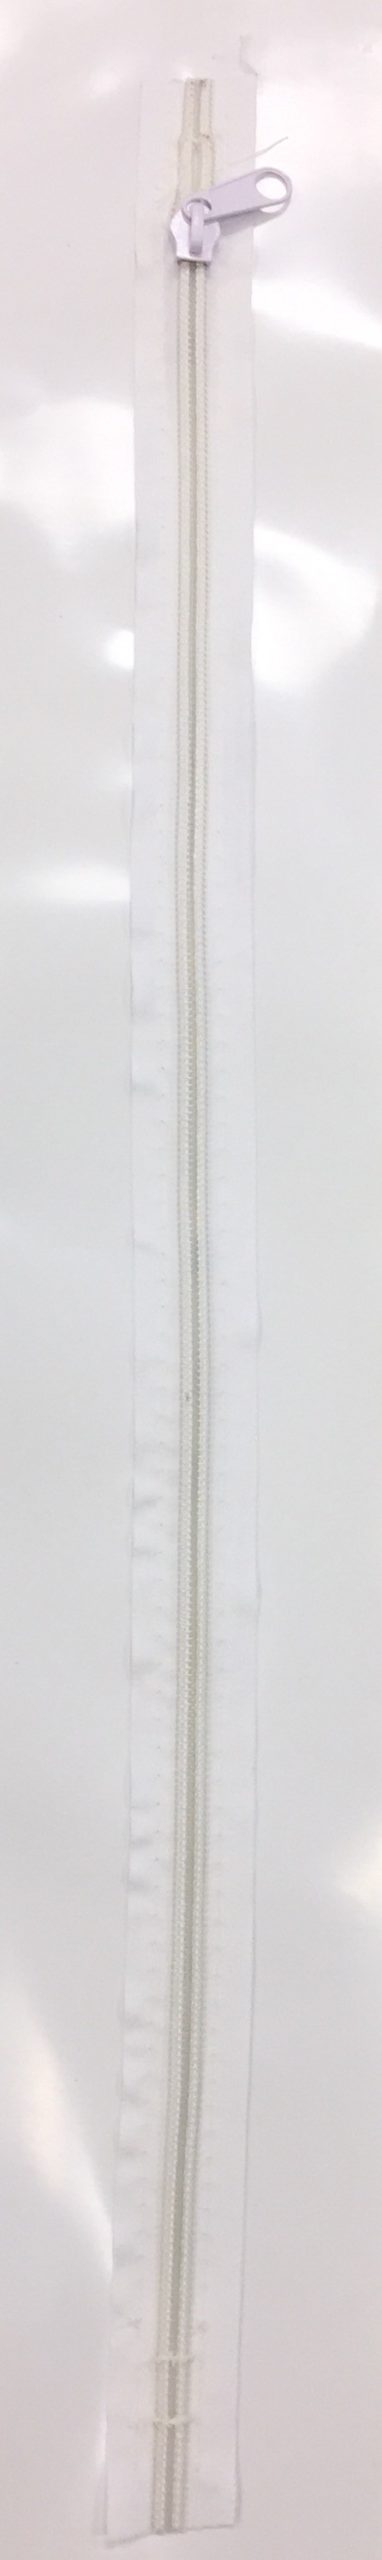 30 in Overall 24 Straight Zipper Self Adhesive Waterproof White